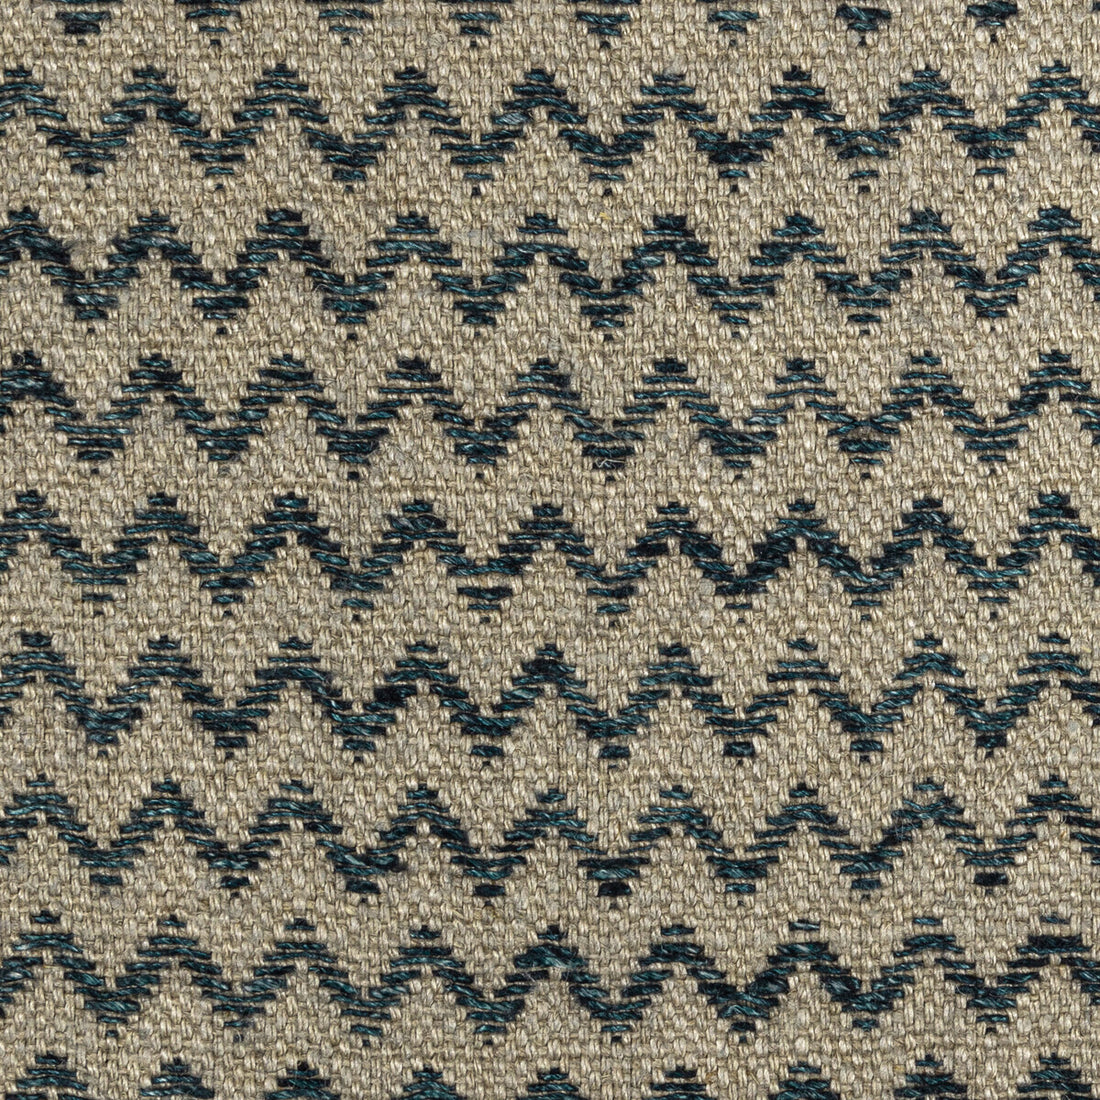 Kravet Basics fabric in 36586-816 color - pattern 36586.816.0 - by Kravet Basics